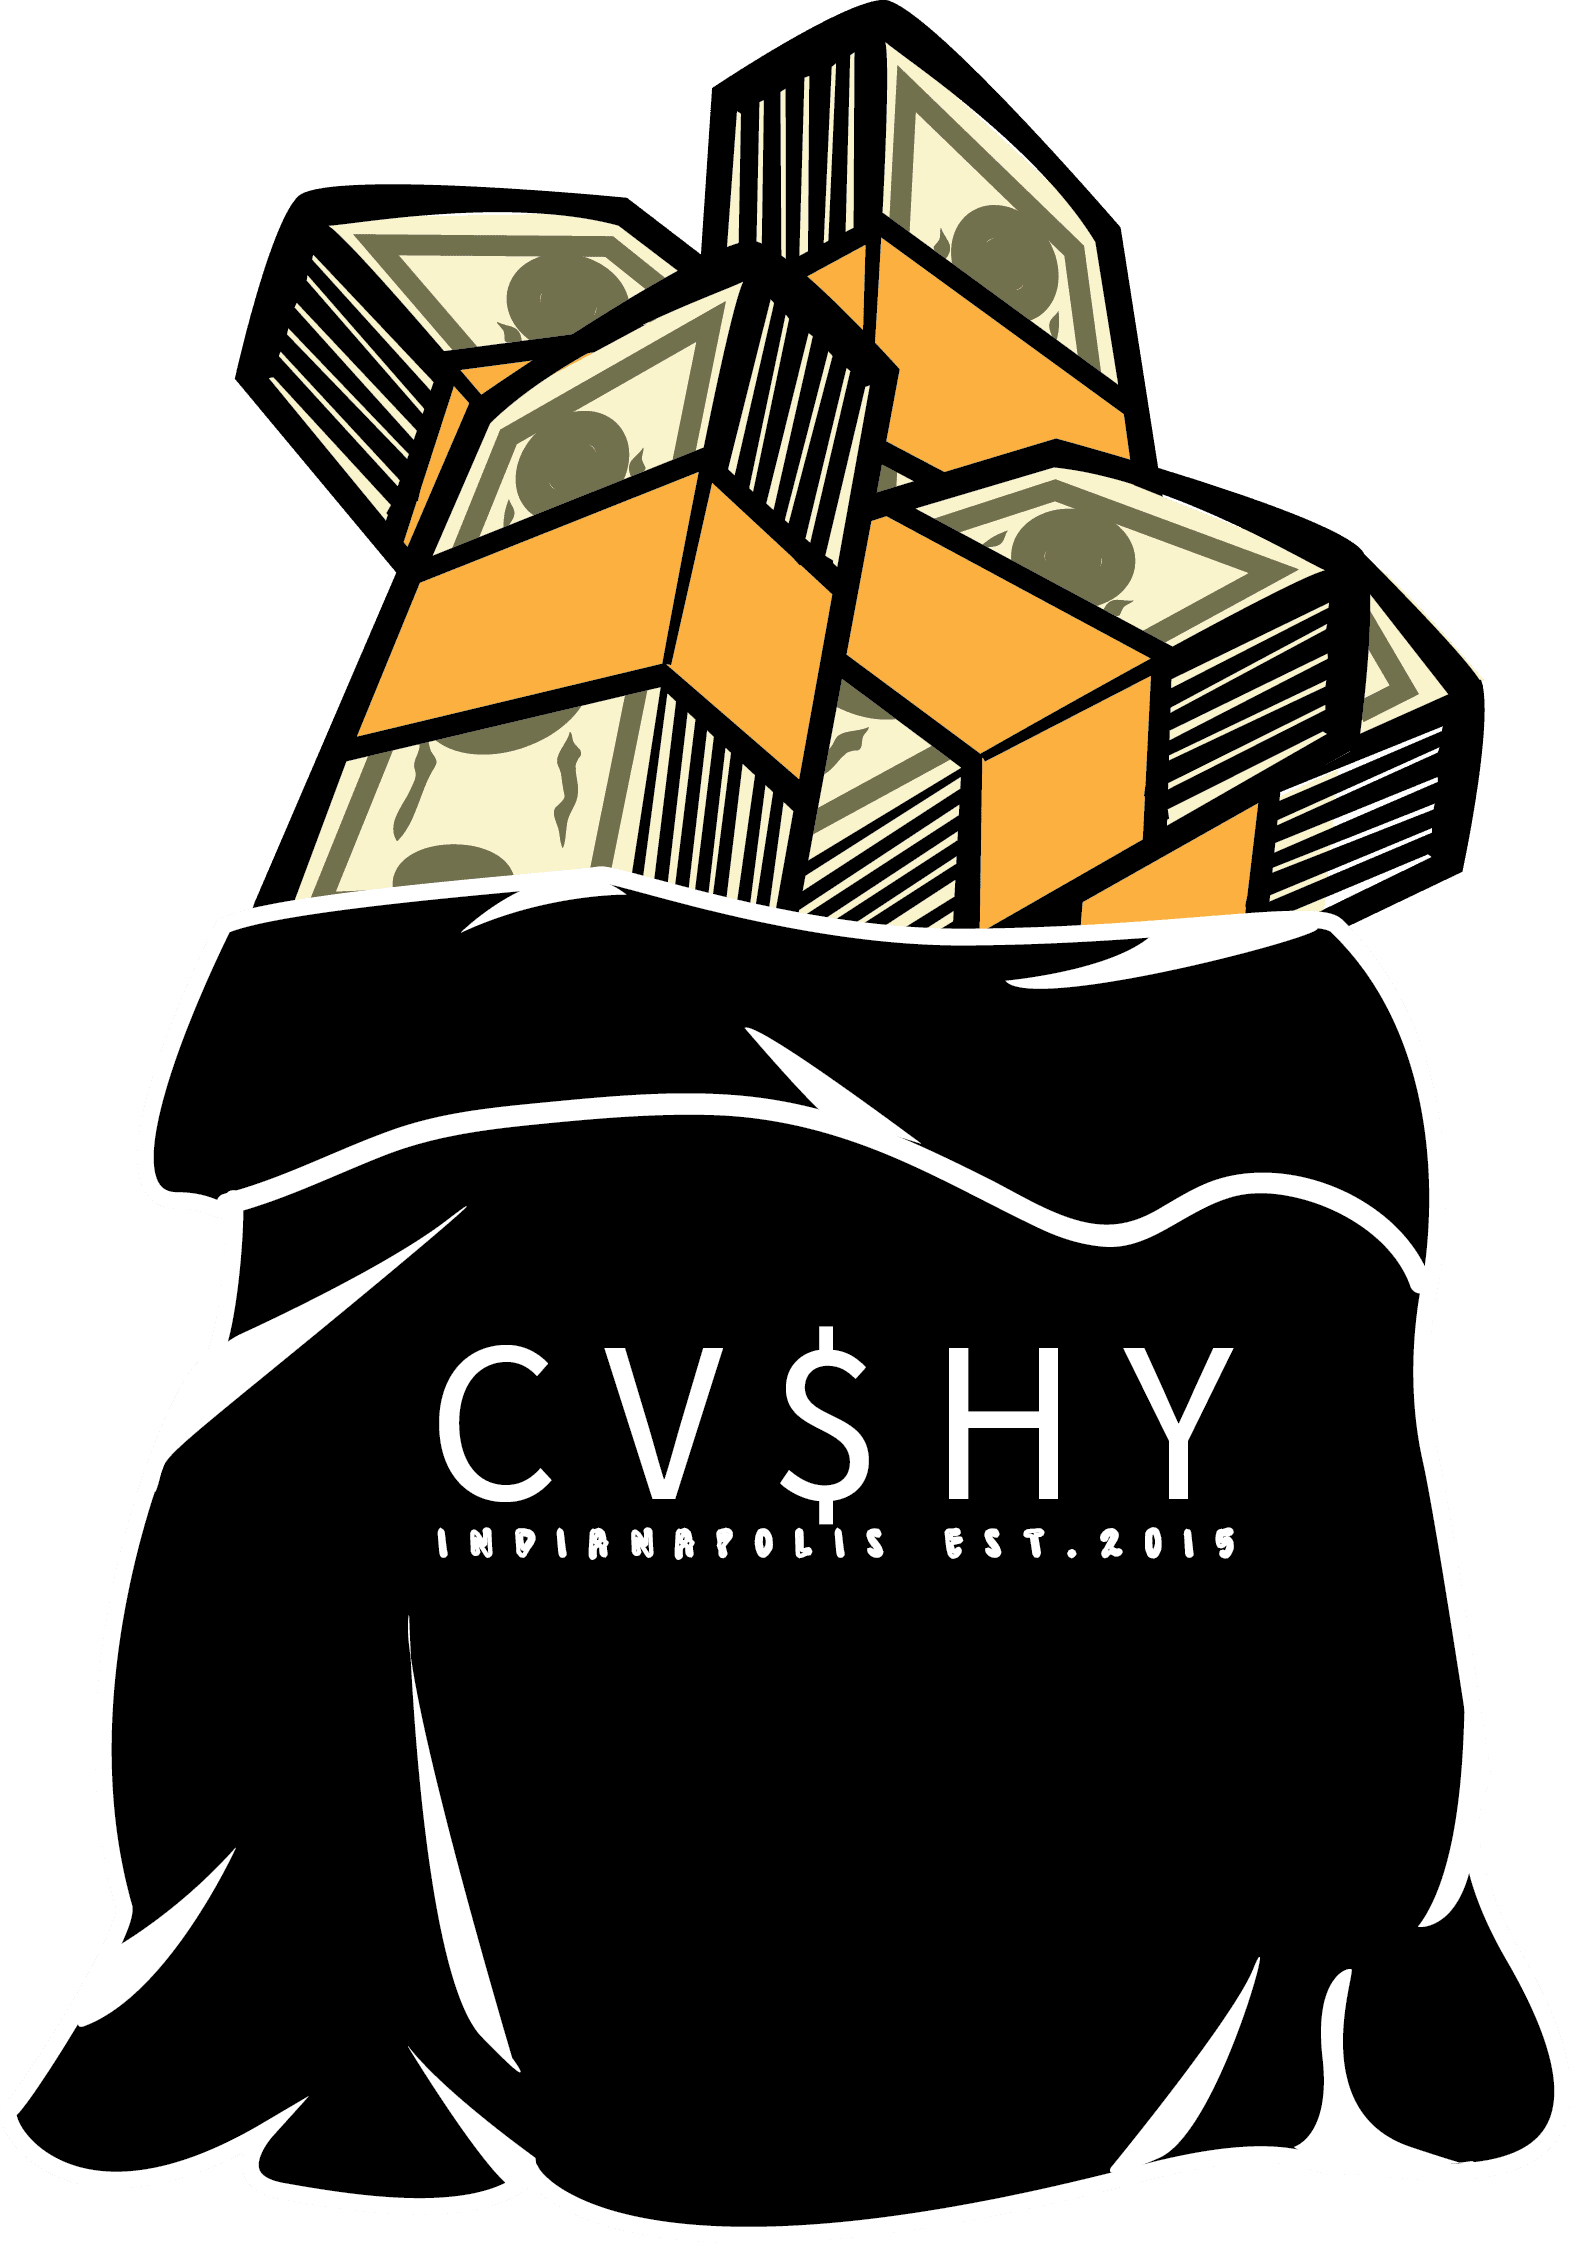 CVSHY